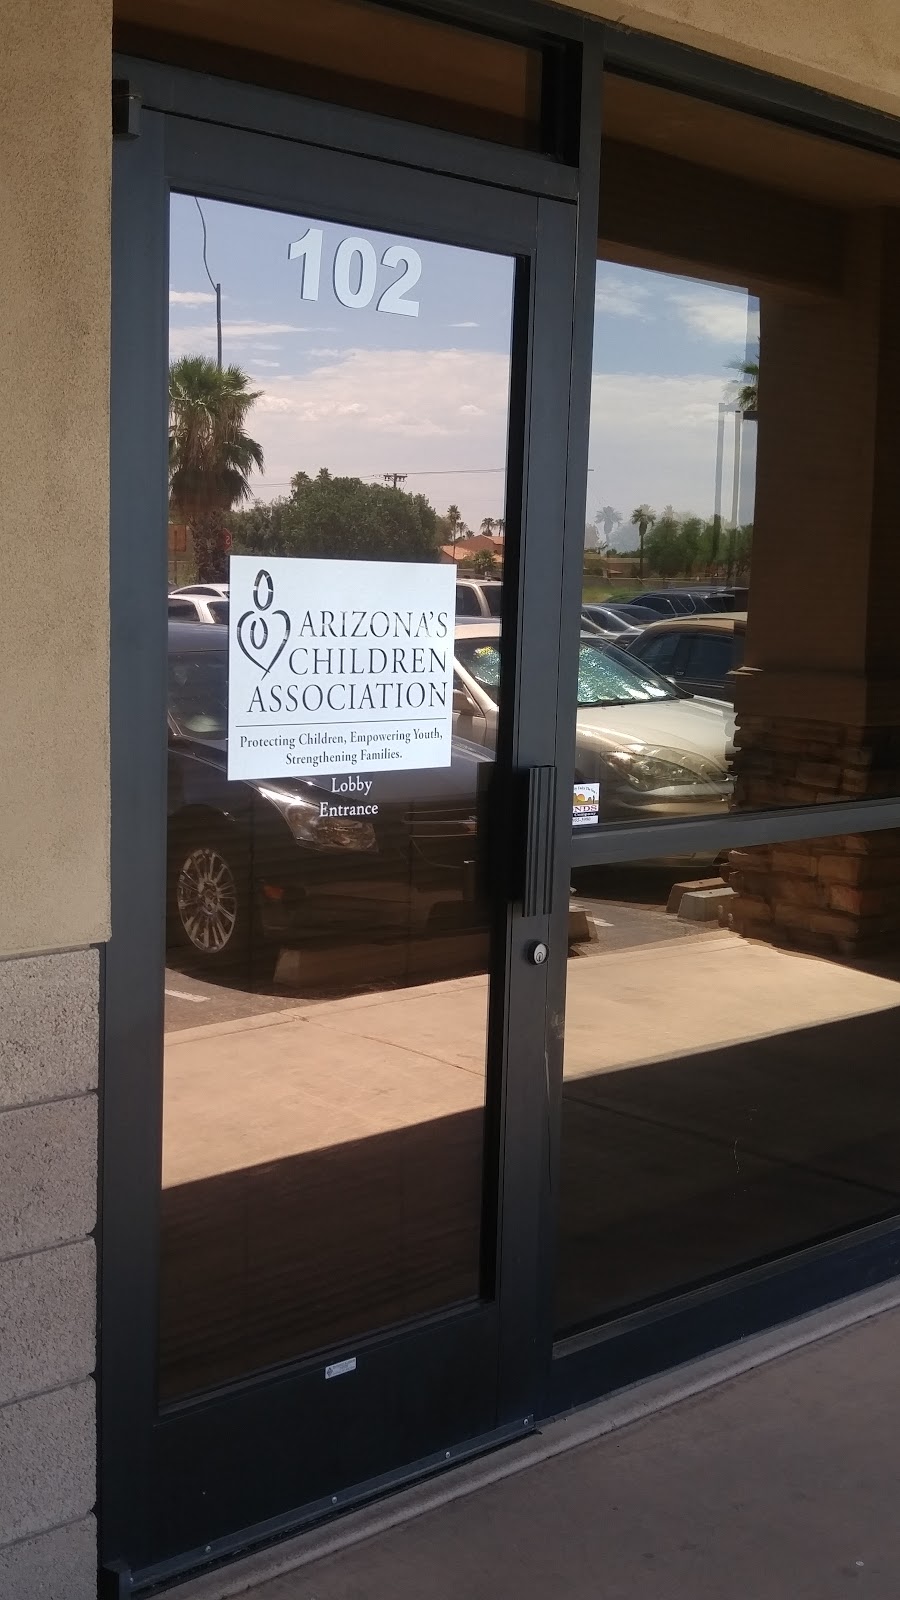 Arizonas Children Association